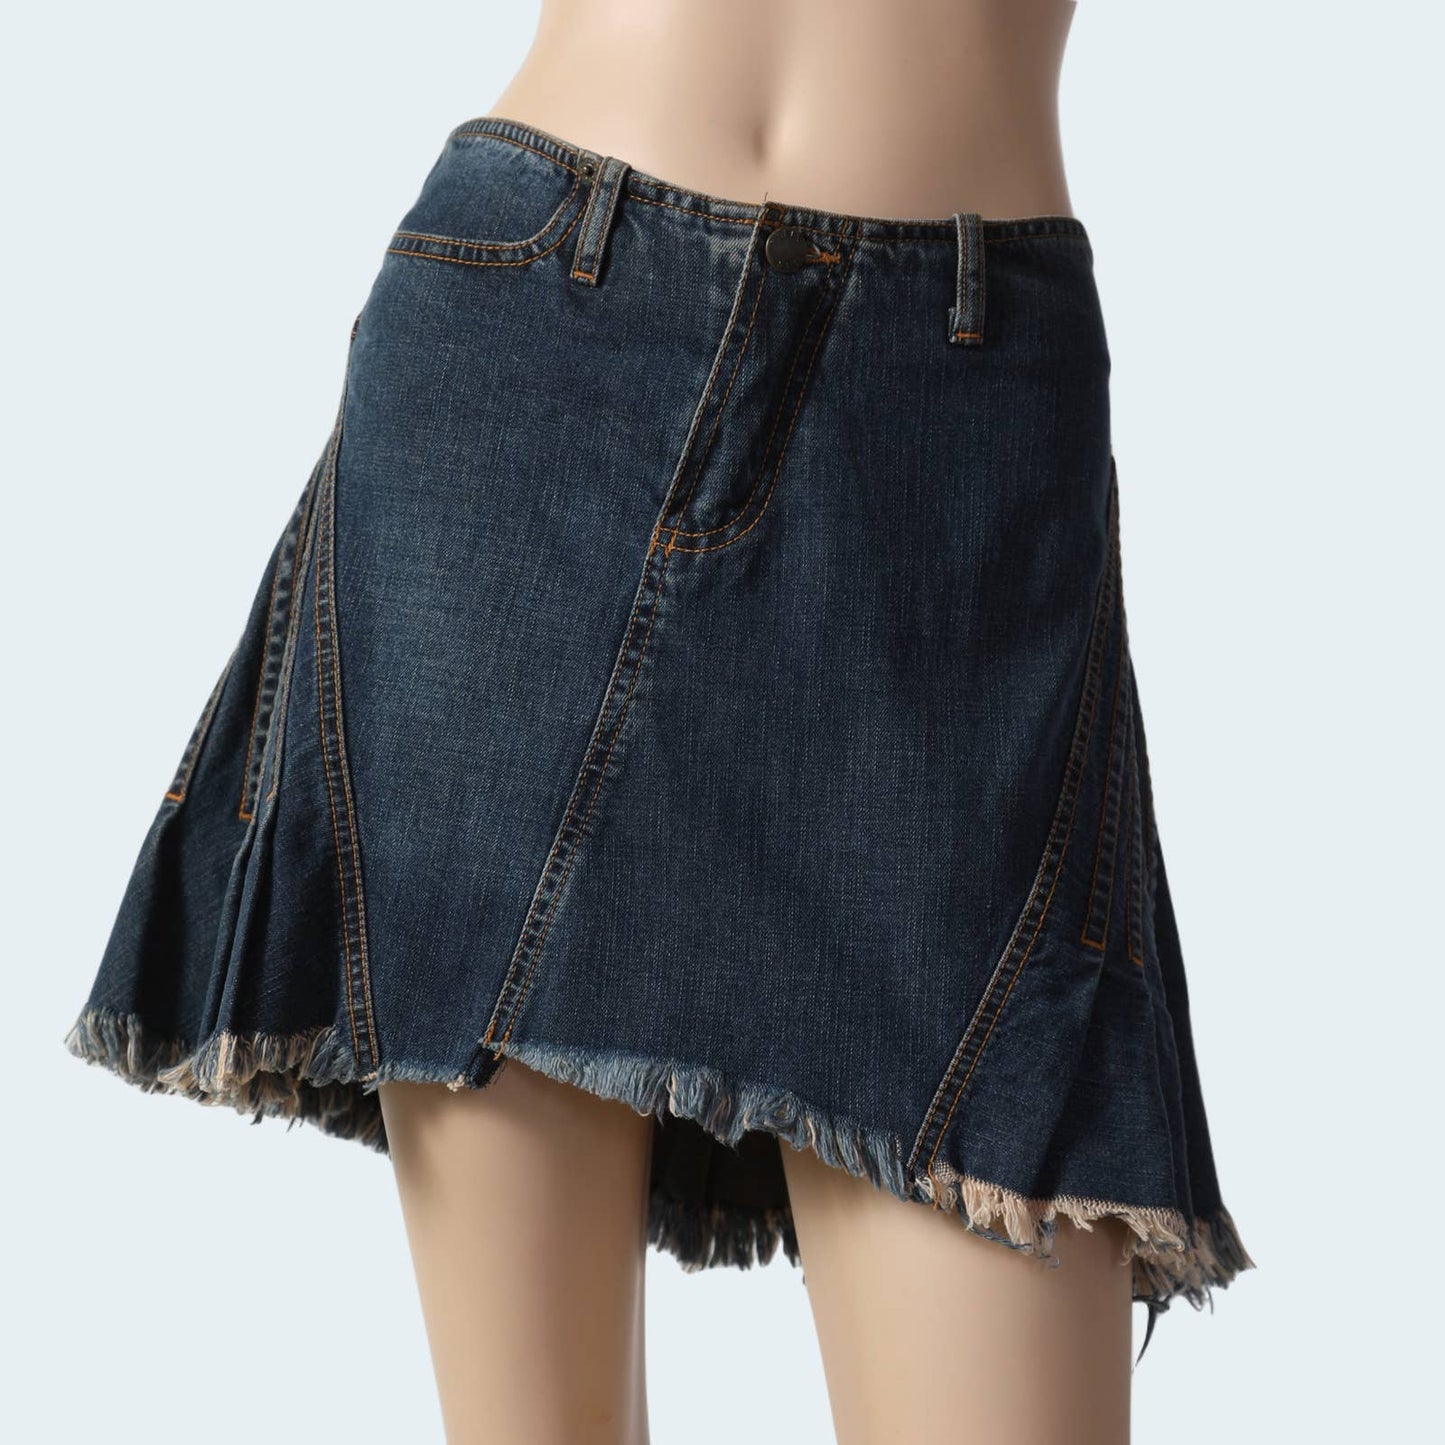 PLEIN SUD JEANS - Vintage Denim Pleated Skirt